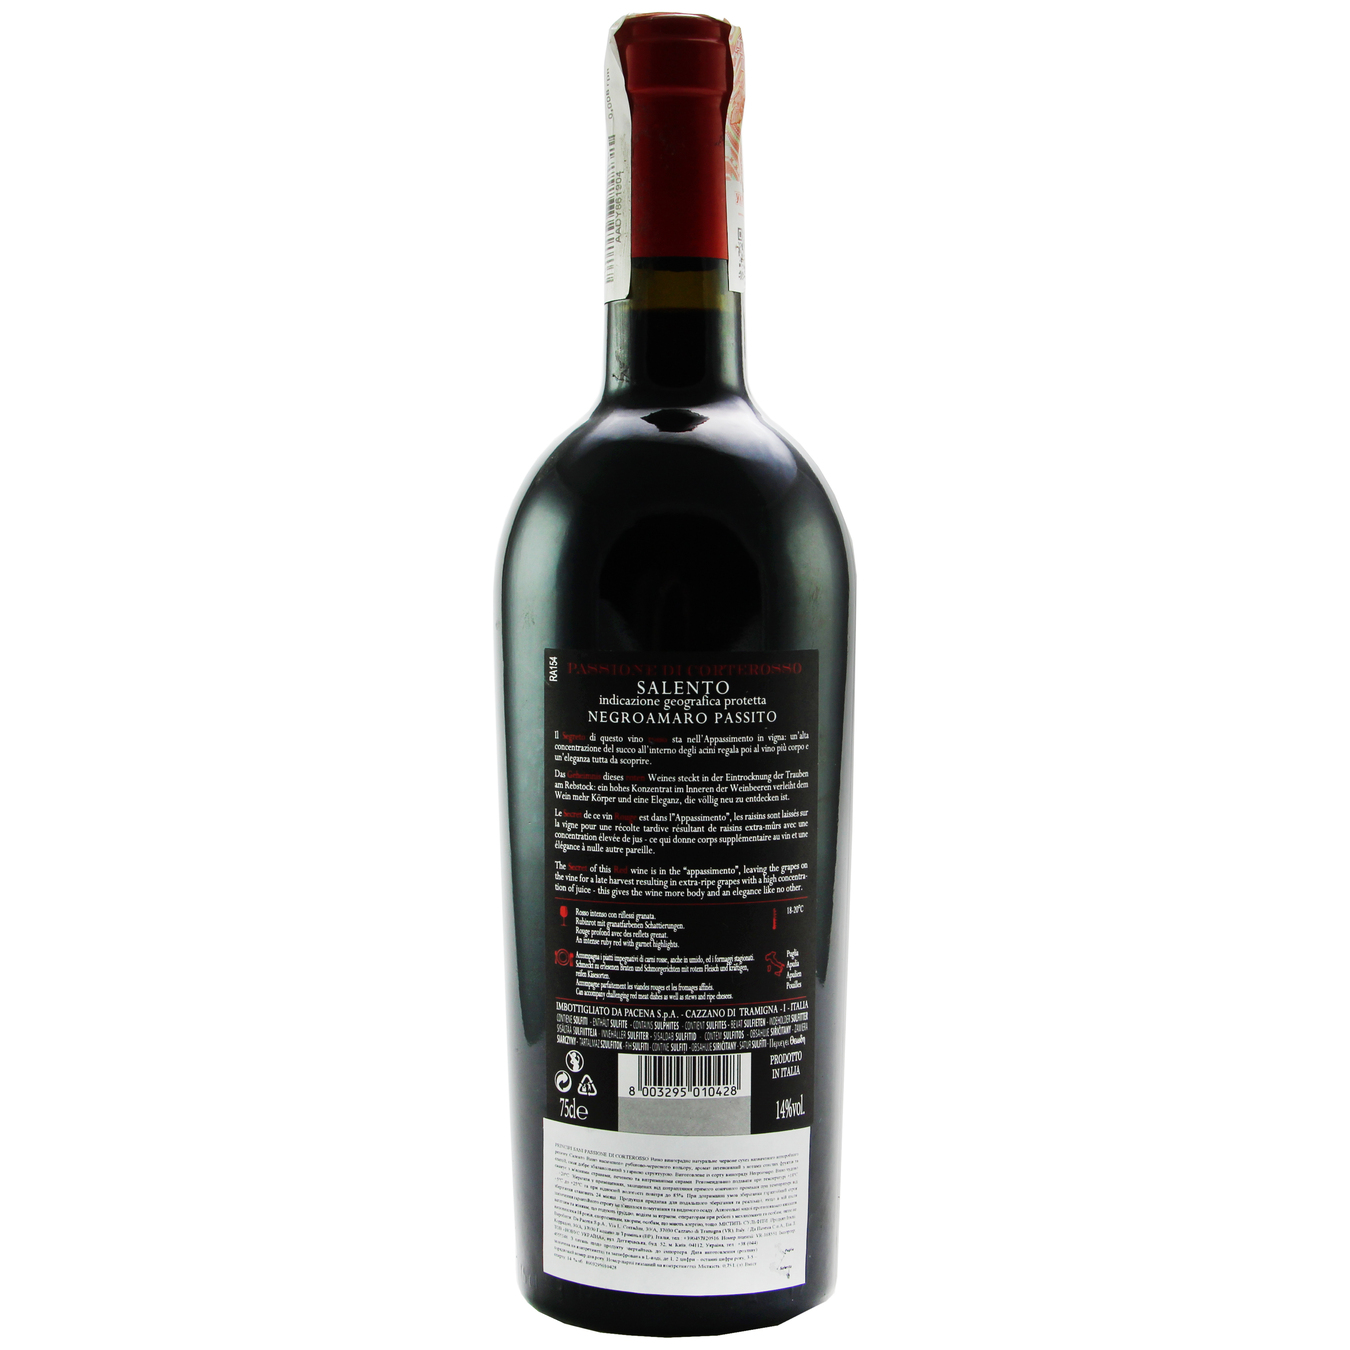 Carlos Sani Passione di Corterosso 100% Appassimento Salento IGT 14% red dry wine 14% 0,75l 2